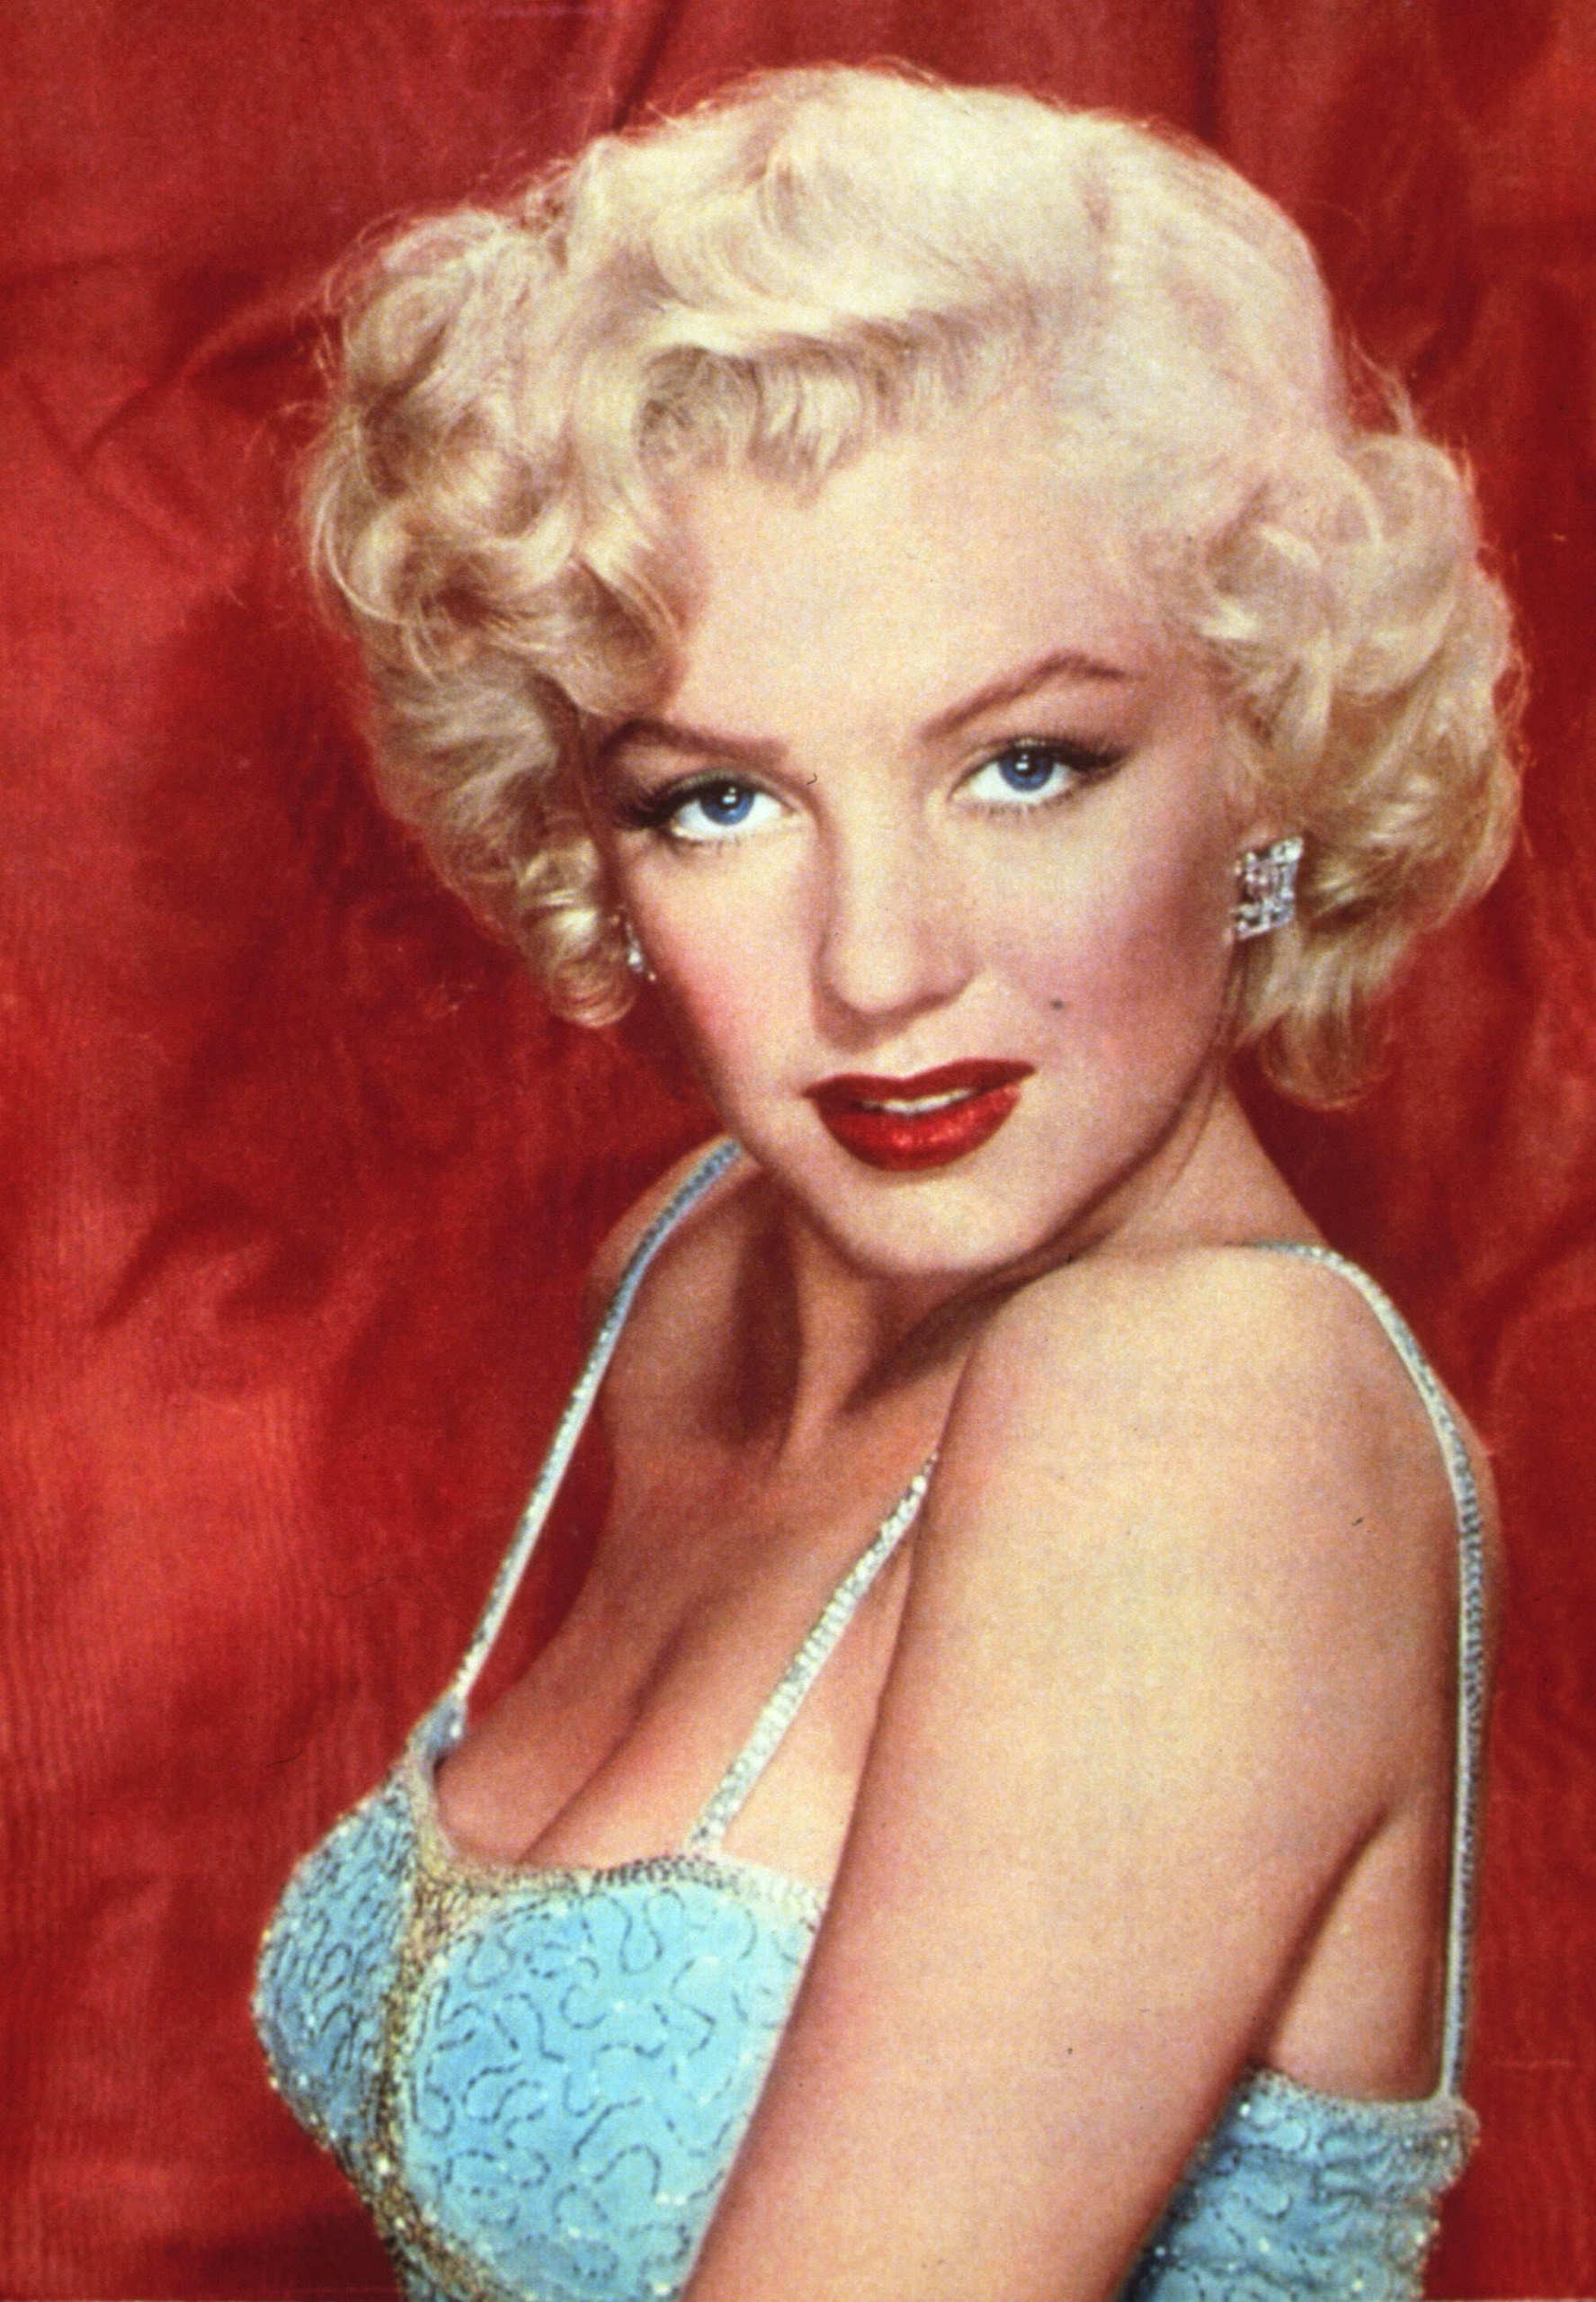 Marilyn-Monroe-marilyn-monroe-15181395-1775-2560.jpg